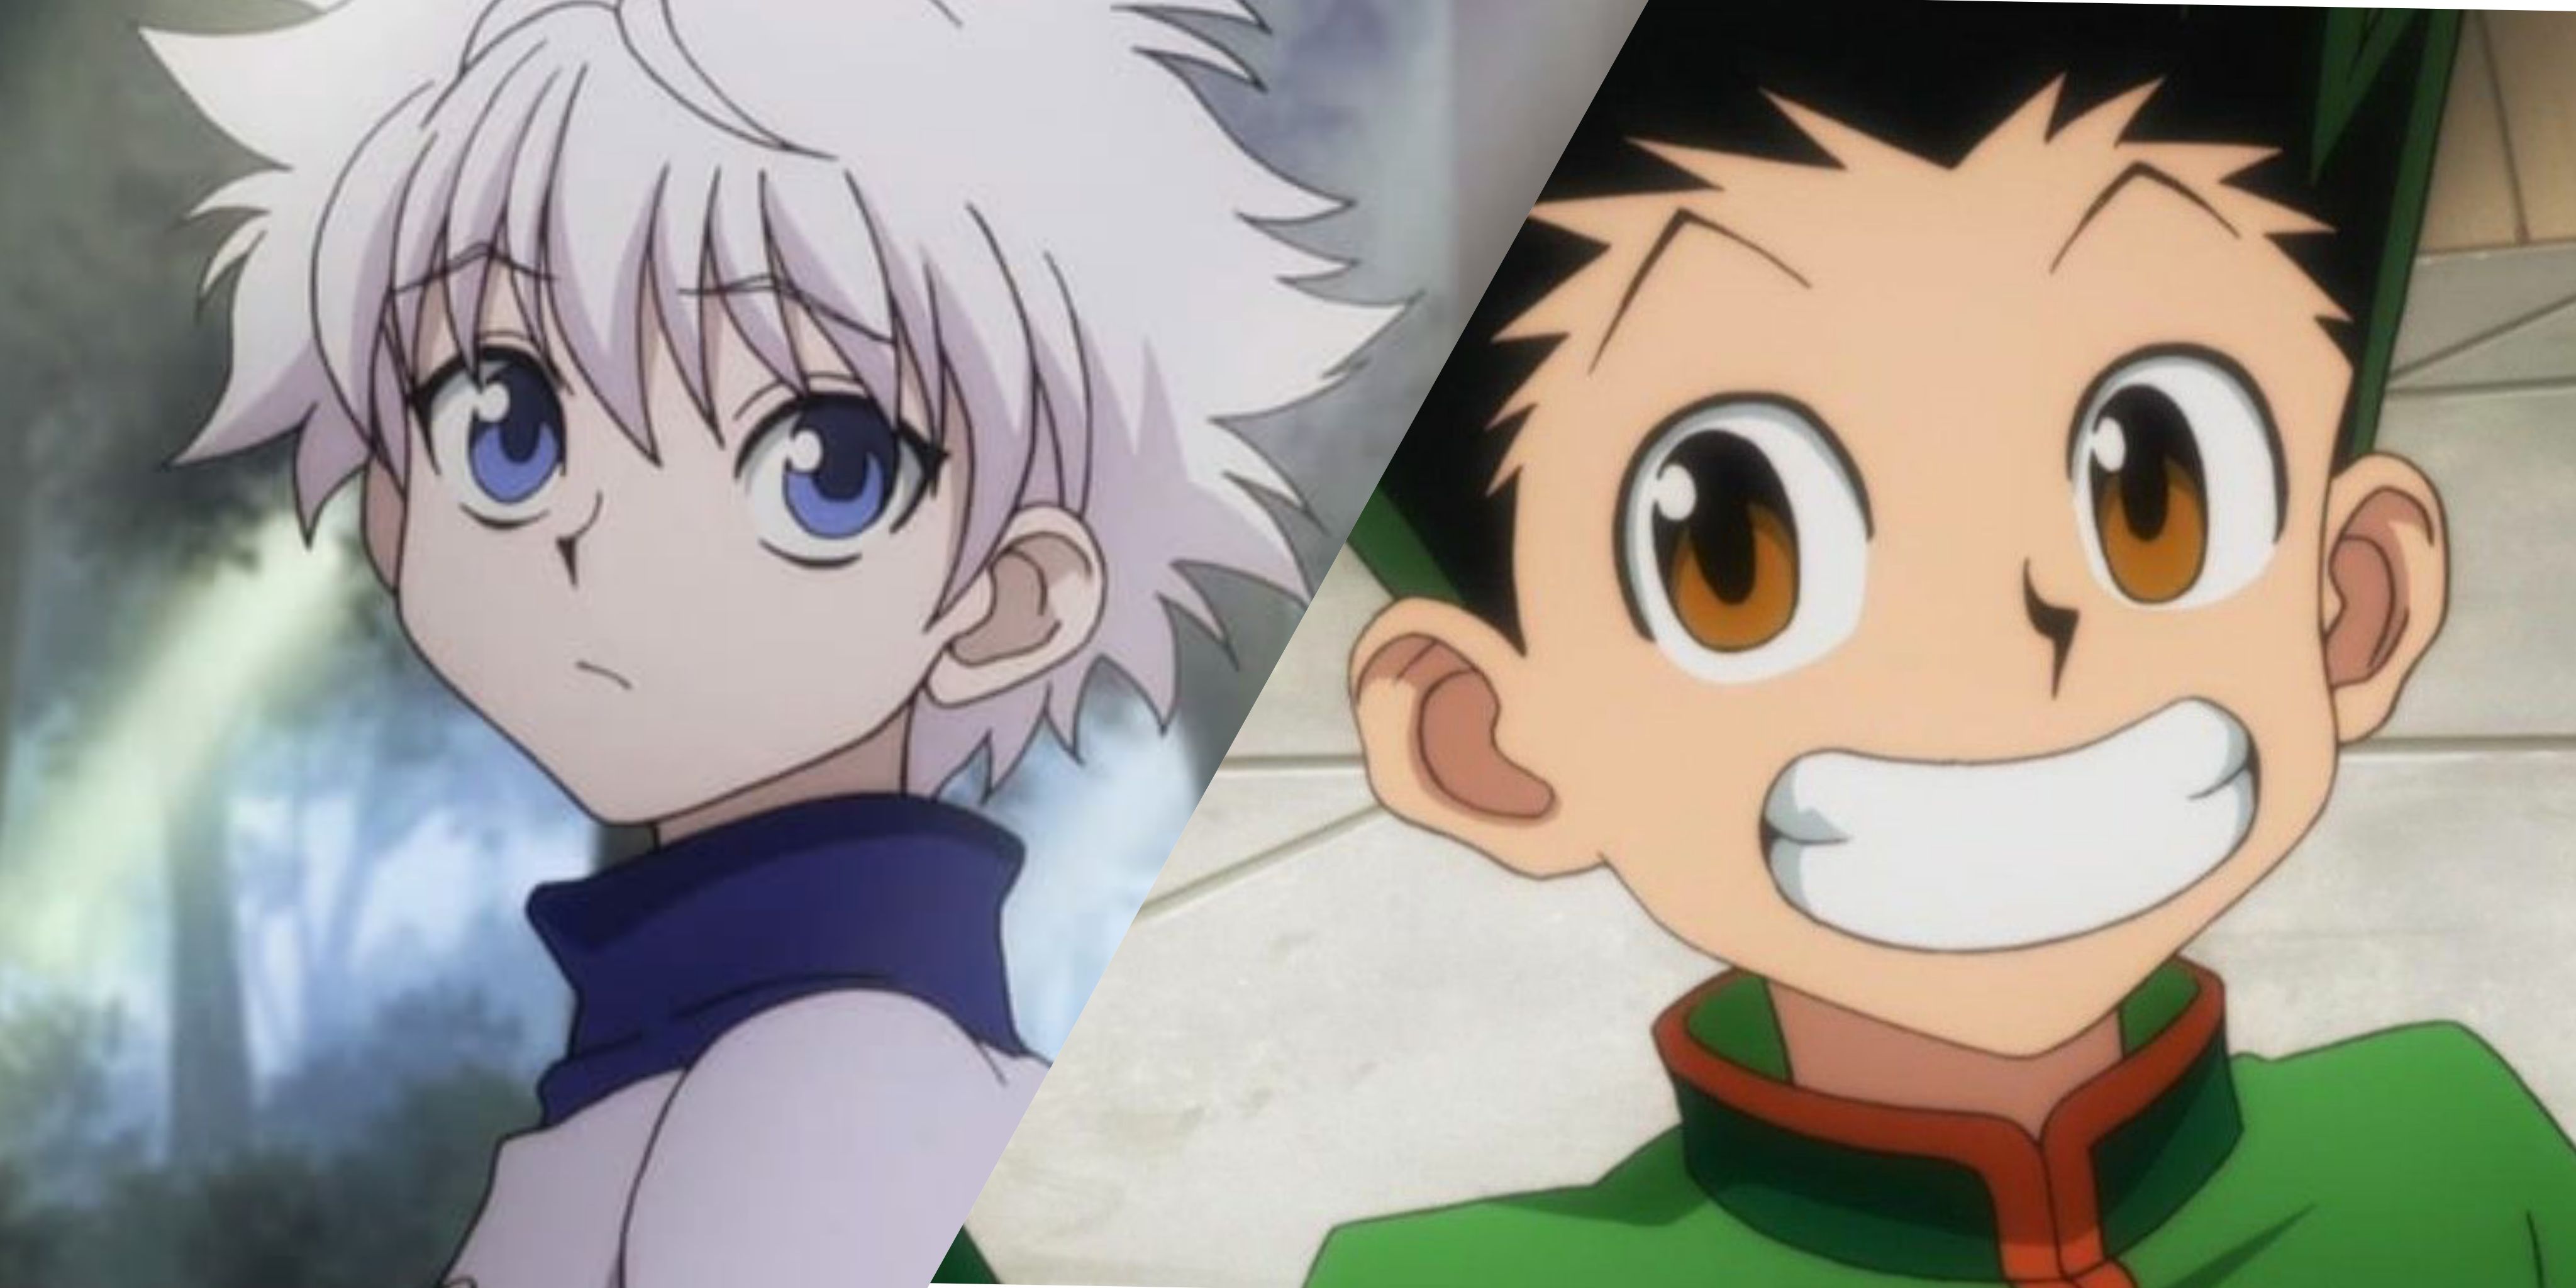 De flesta ikoniska bästa vänner duos i anime